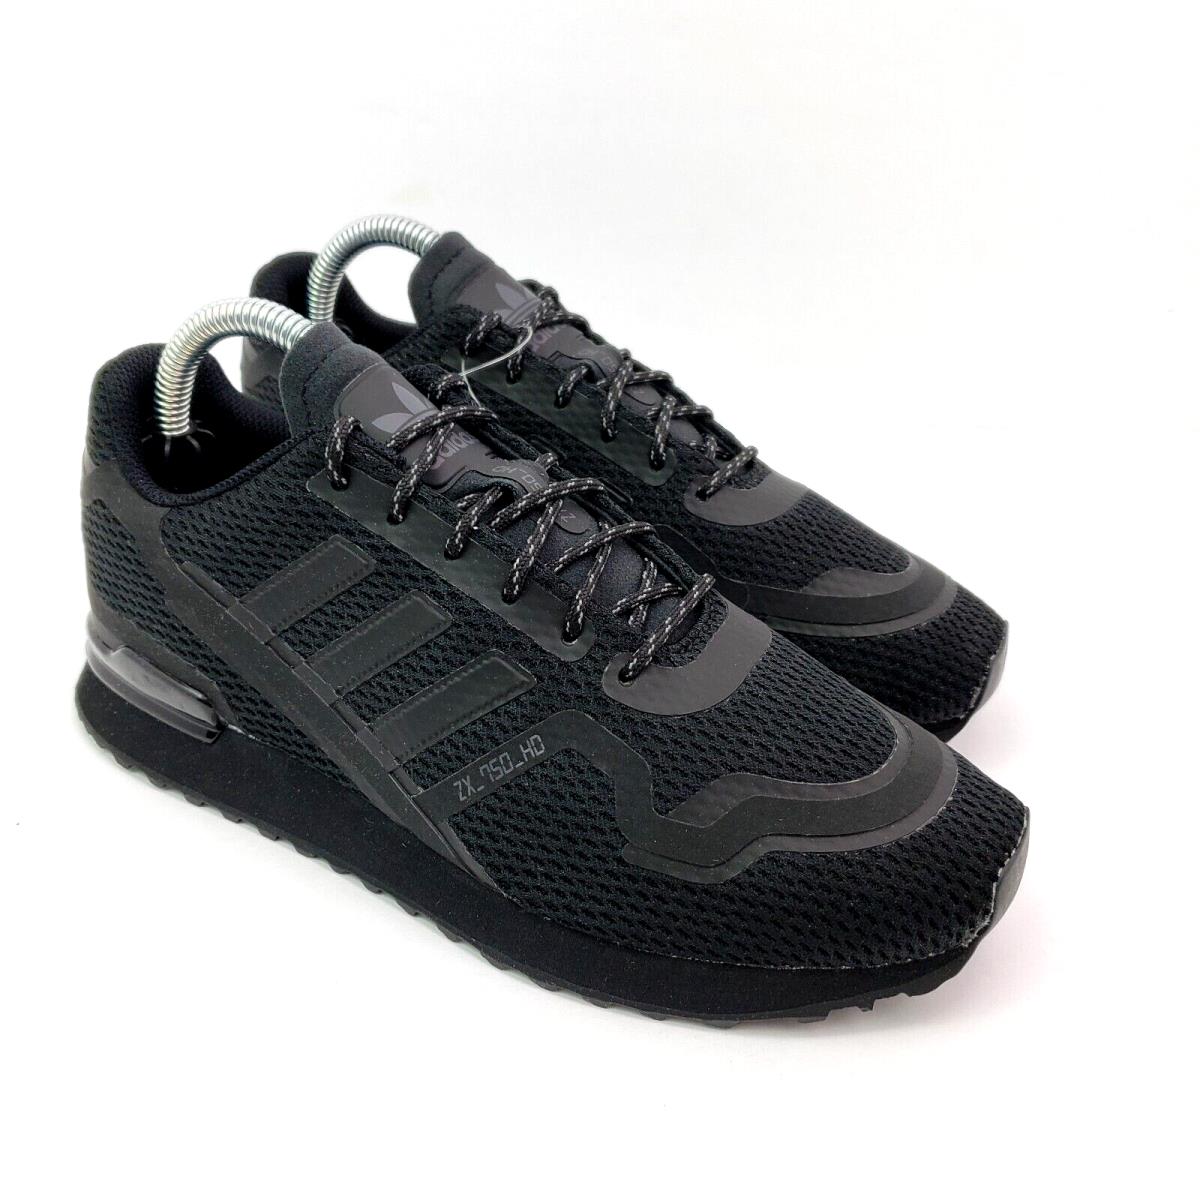 Adidas Originals ZX 750 HD Boys Size 3Y Black Athletic Sneaker Shoes FY5664